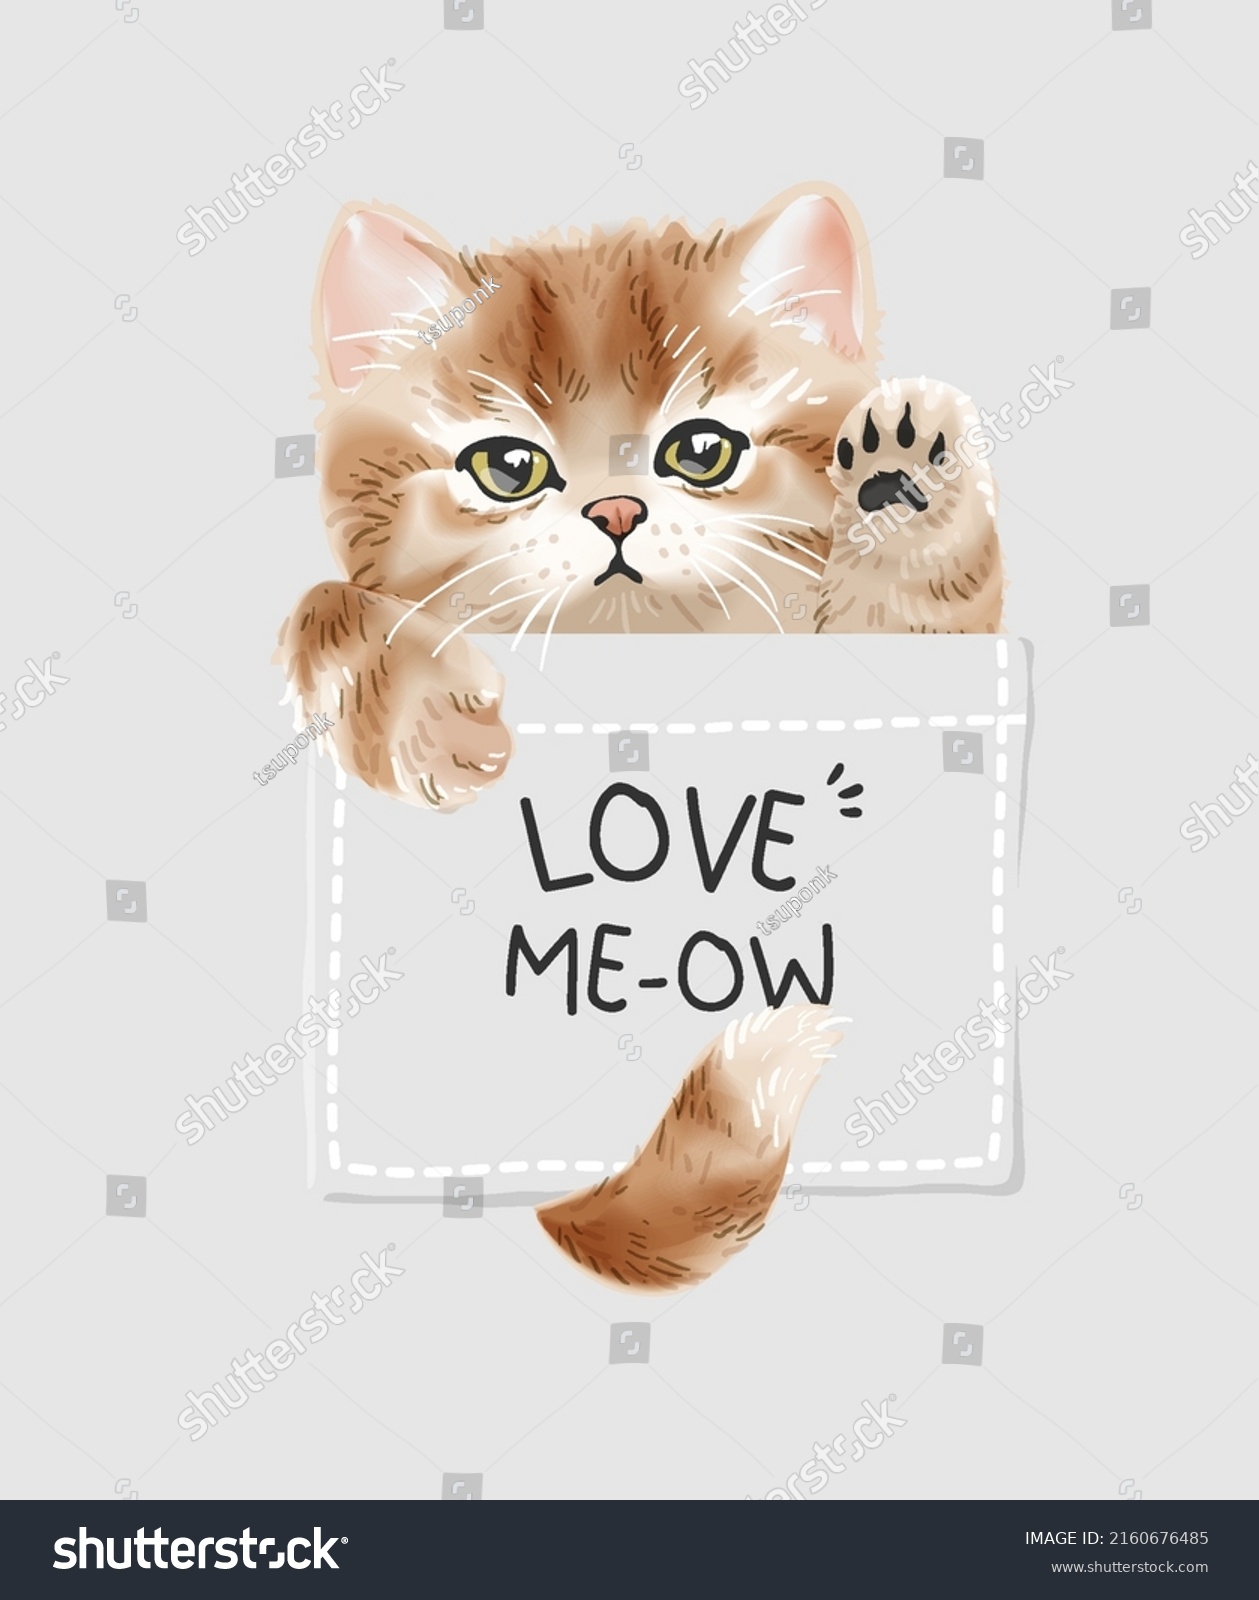 SVG of love slogan with cute kitten in shirt pocket vector illustration svg